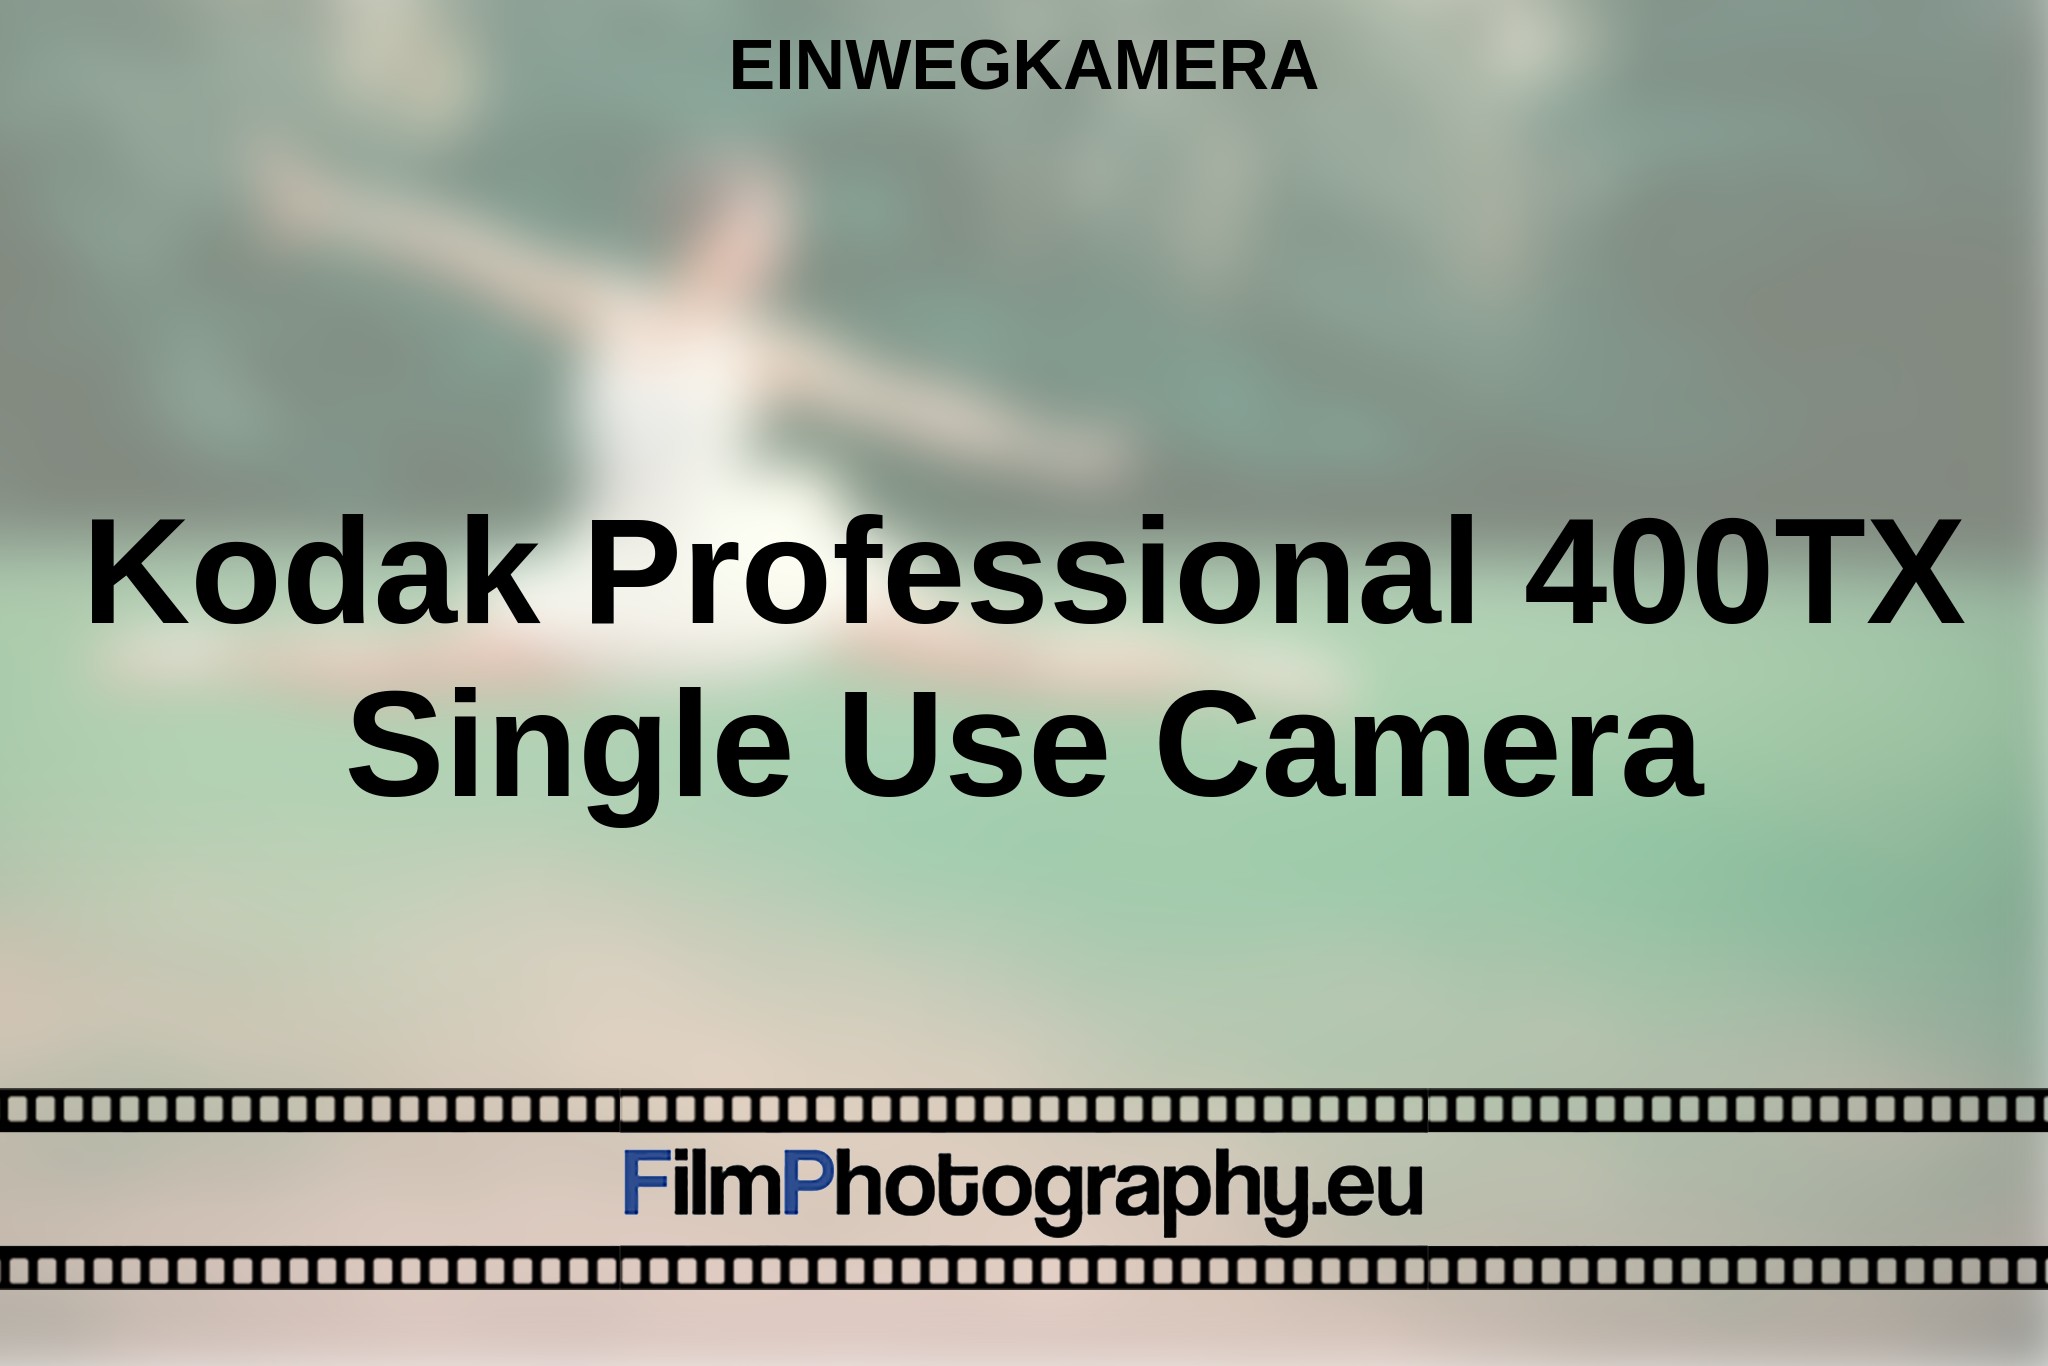 kodak-professional-400tx-single-use-camera-einwegkamera-bnv.jpg